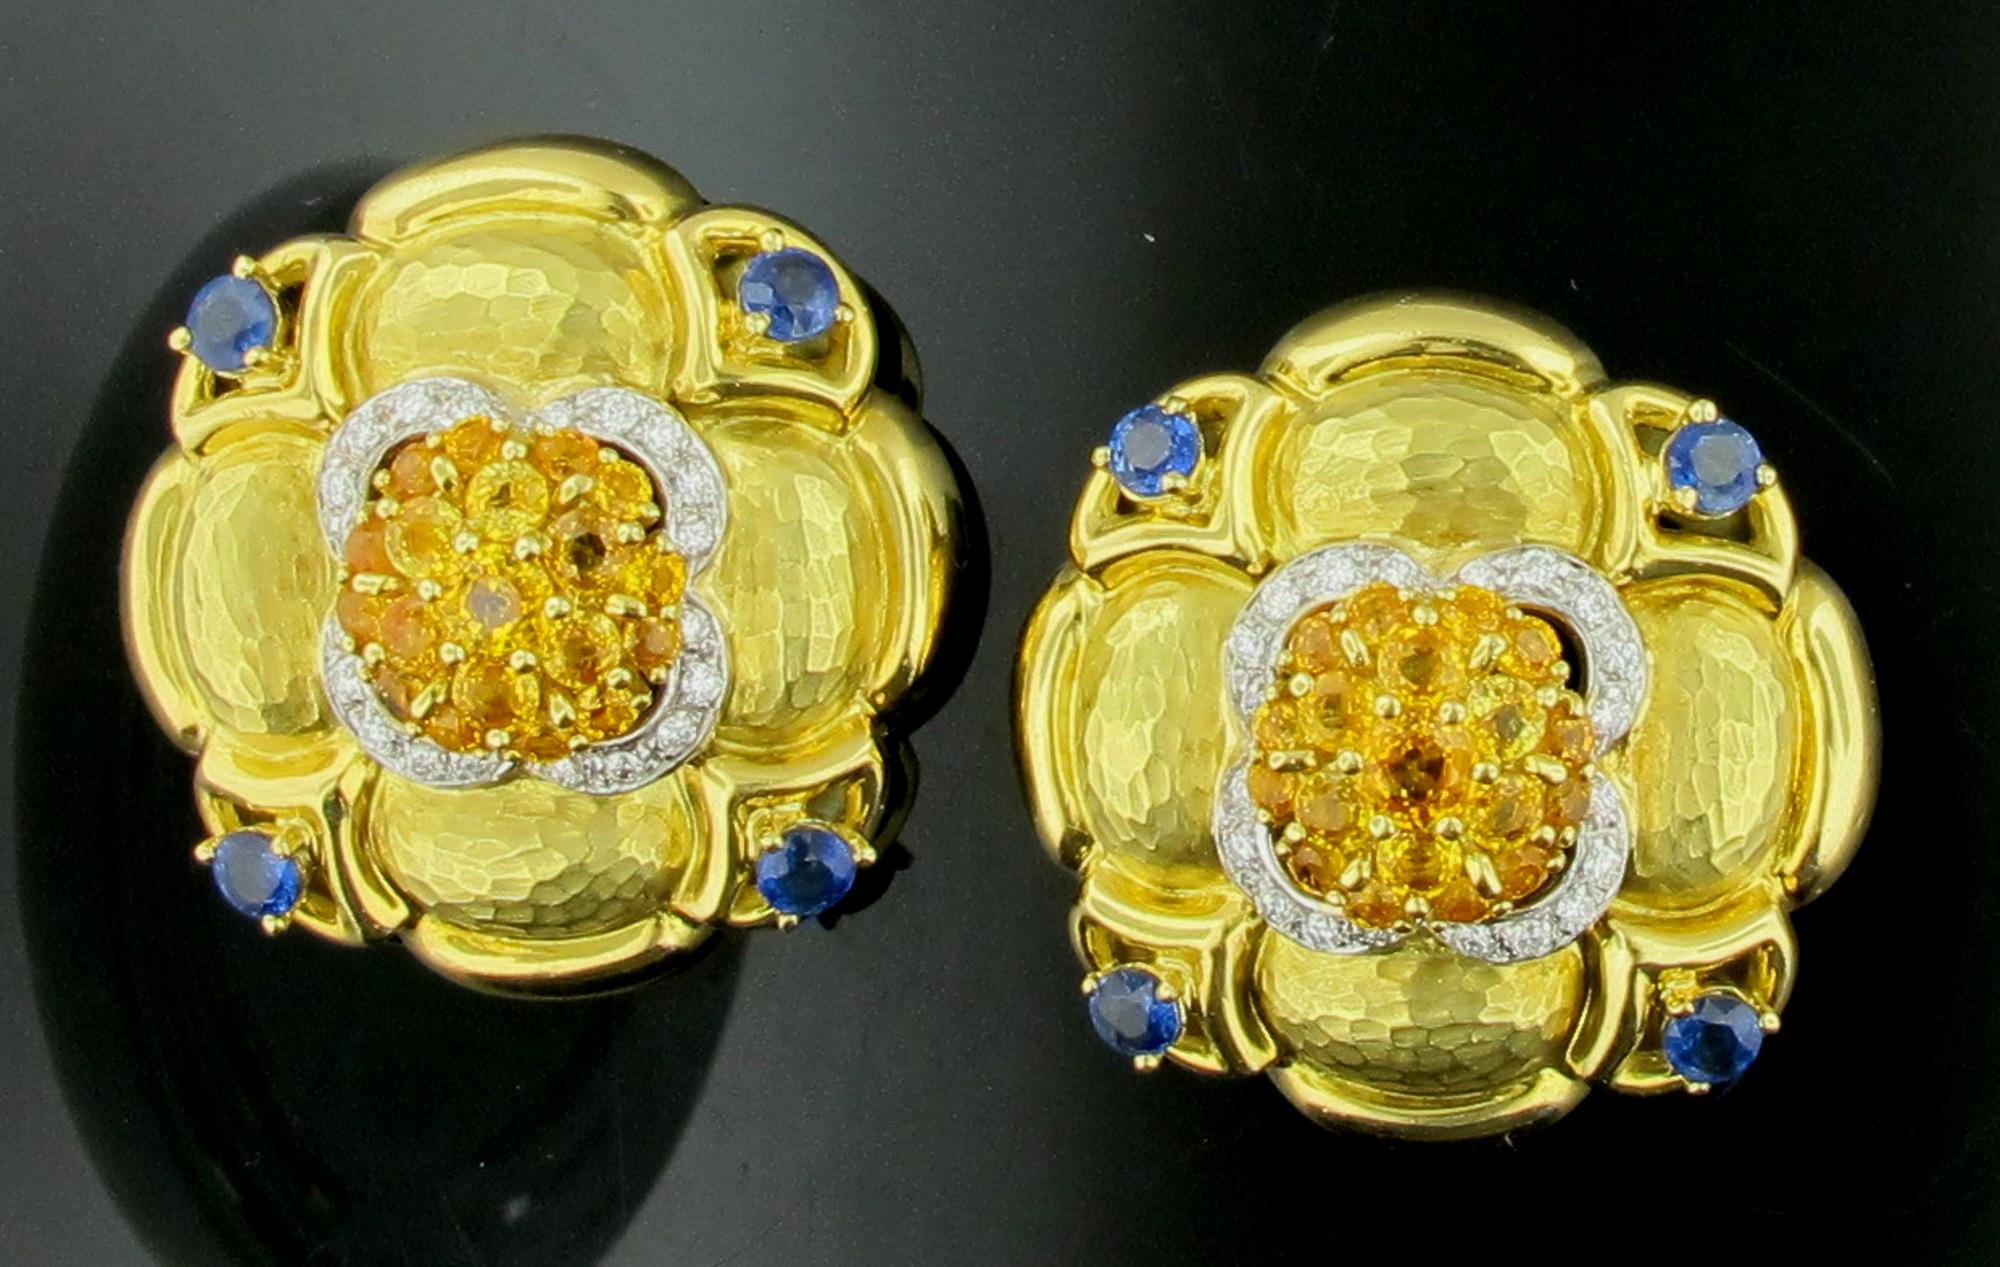 Sertis en or jaune martelé 18 carats, 38 saphirs jaunes naturels d'un poids total d'environ 7,00 carats,  8 saphirs bleus naturels d'un poids total d'environ 1,50 carat et 40 diamants ronds de taille brillant d'un poids d'environ 0,50 carat.
Il